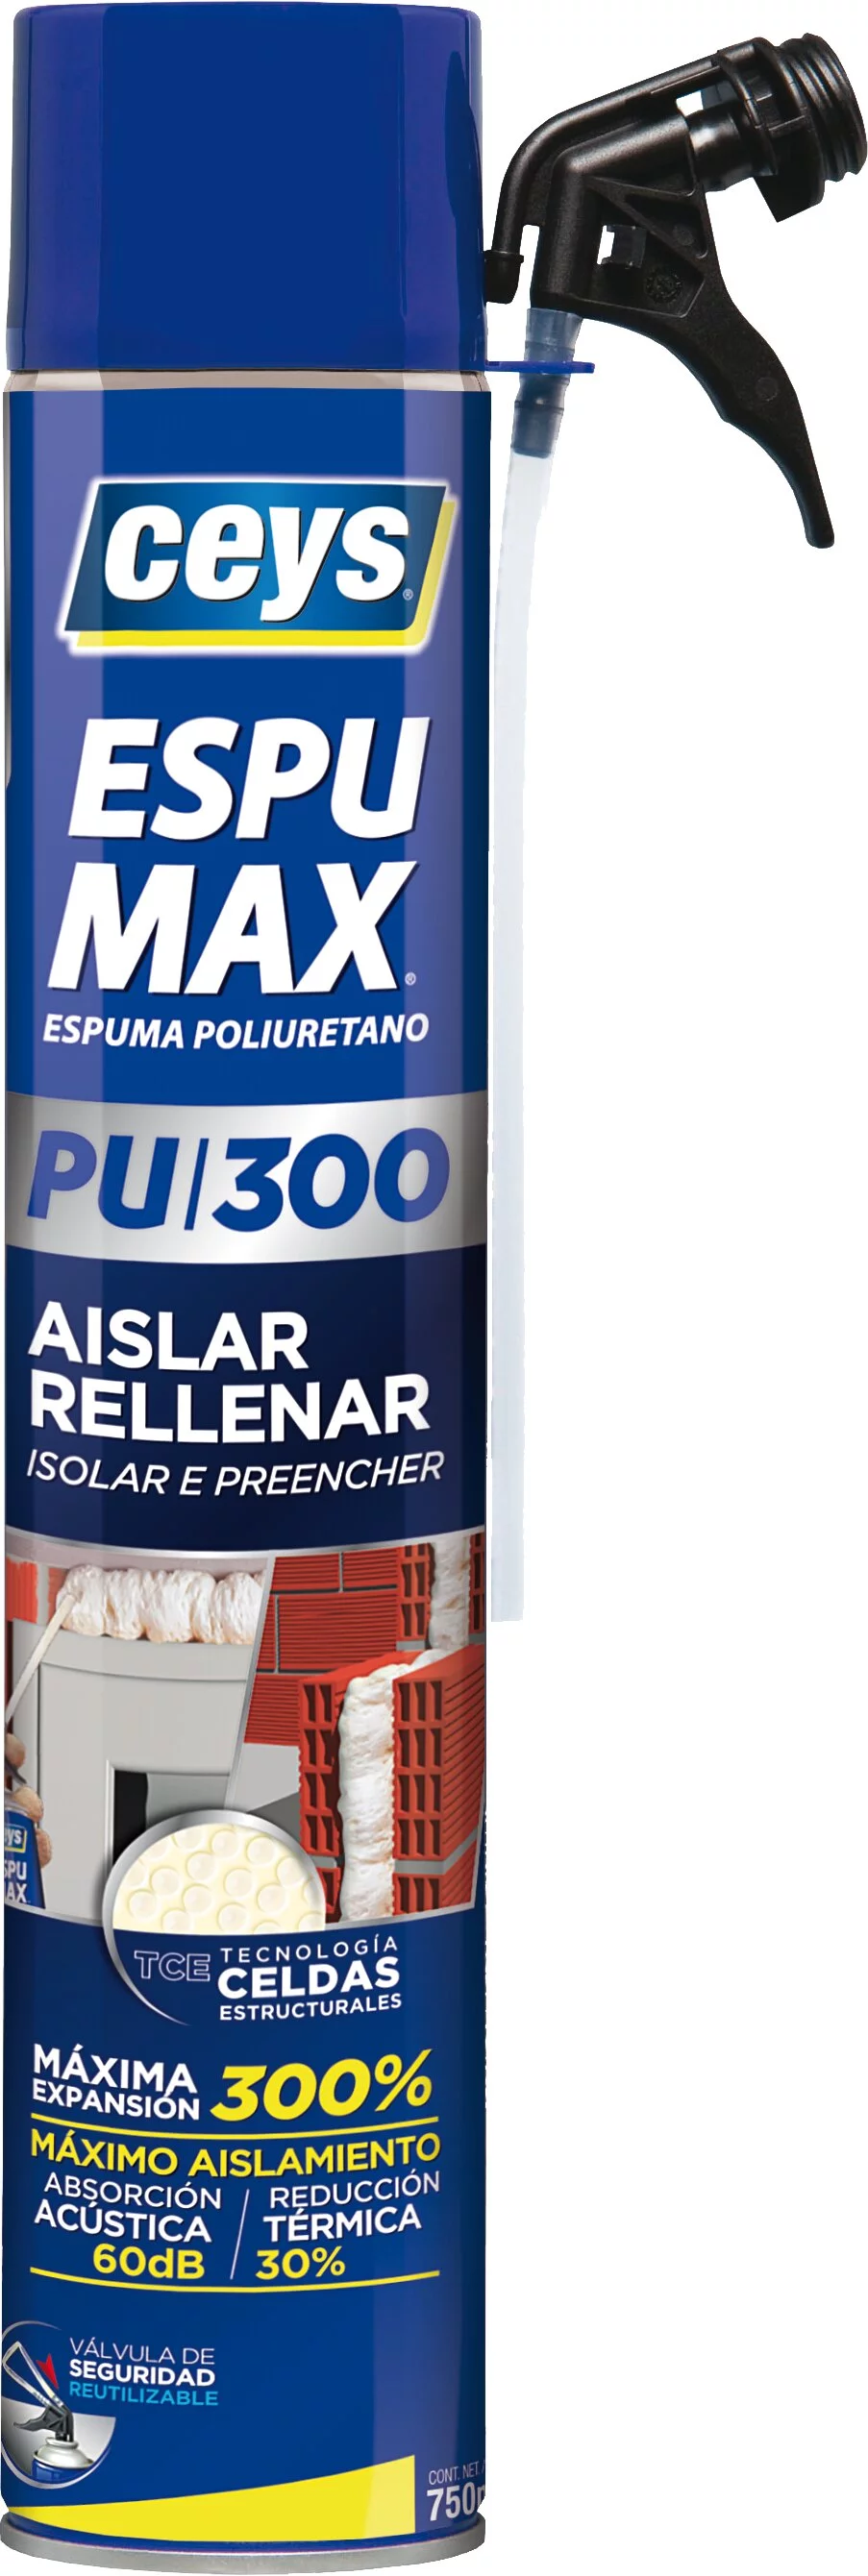 Espuma de Poliuretano PU300 ESPUMAX - Ceys